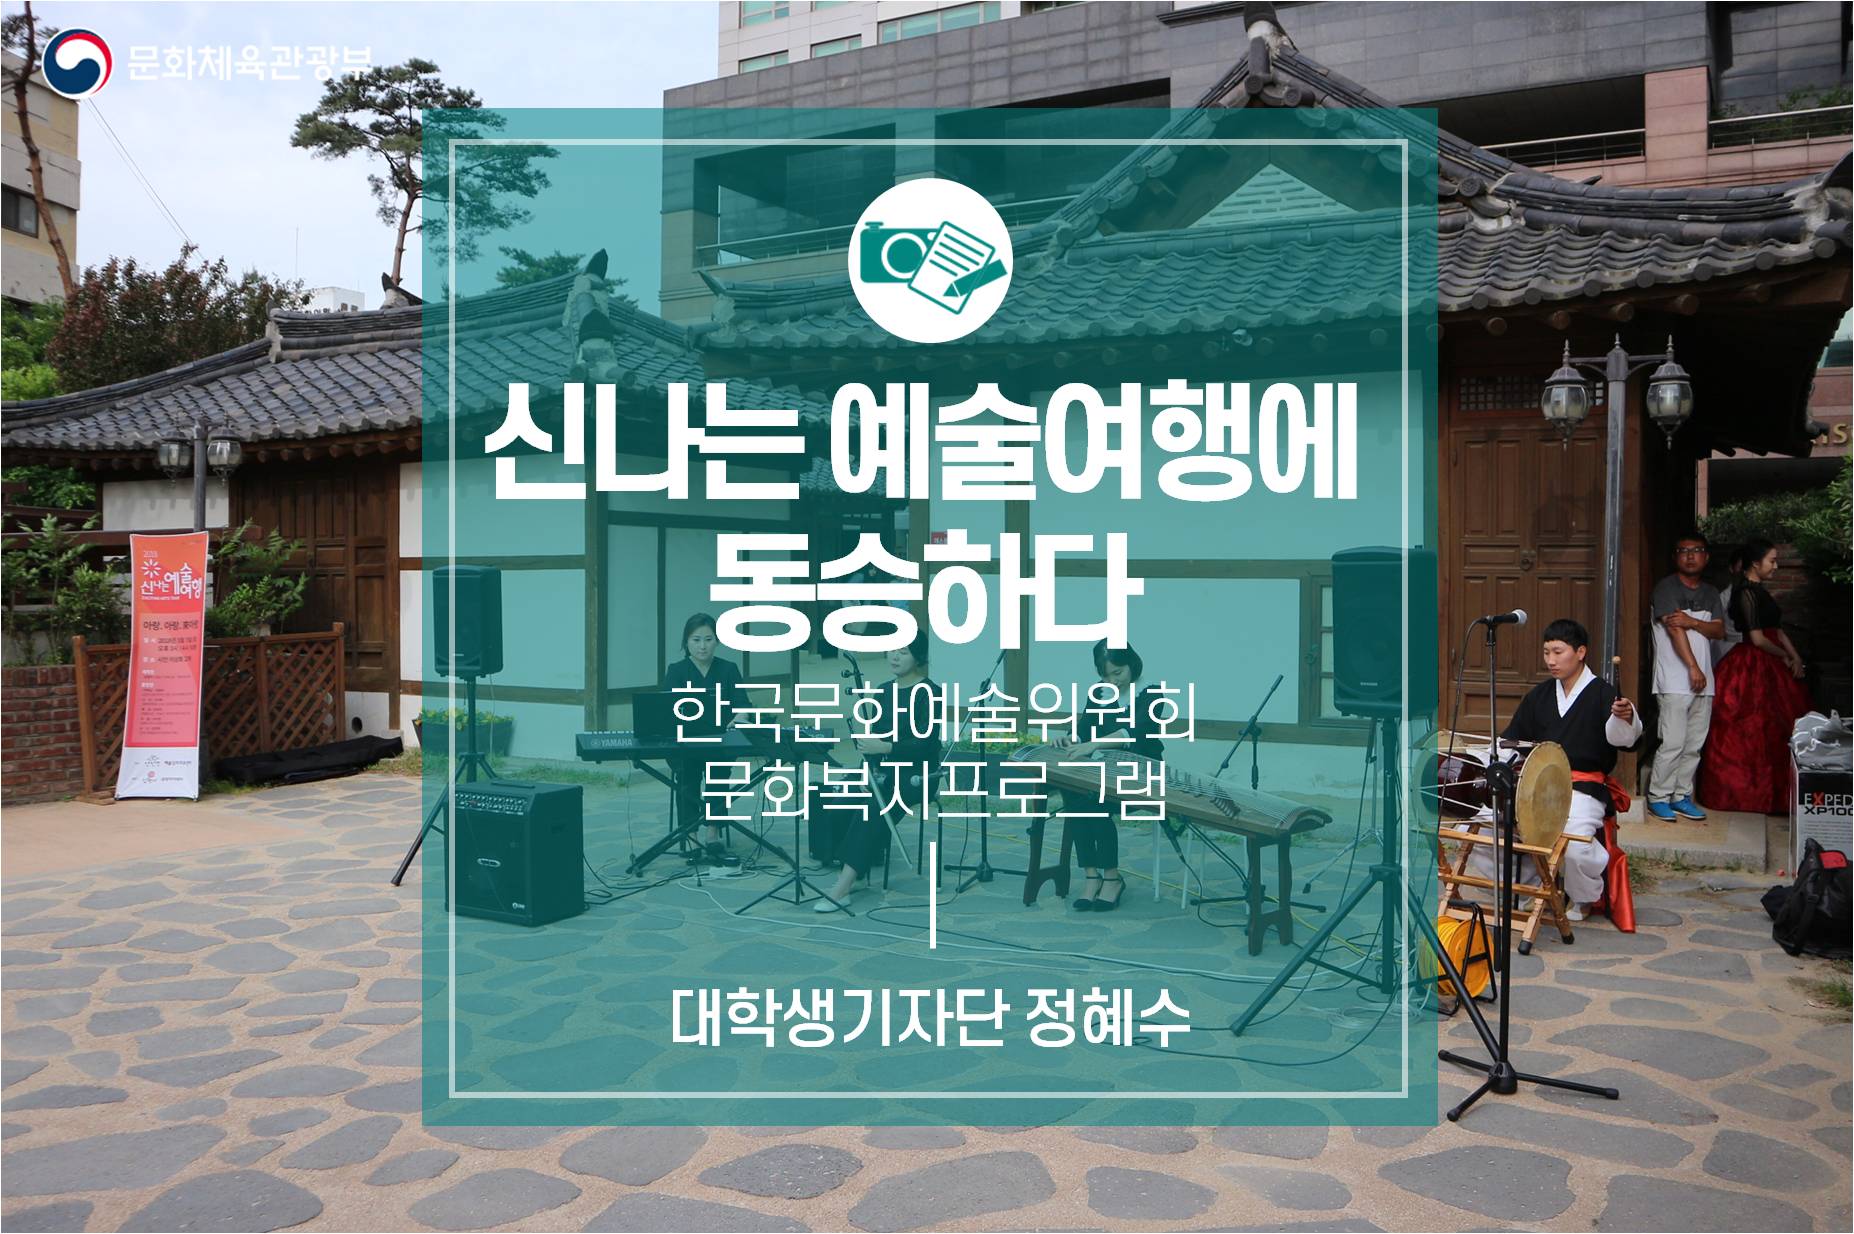 한국문화예술위원회 문화복지프로그램  ‘2018 신나는 예술여행’에 동승하다!